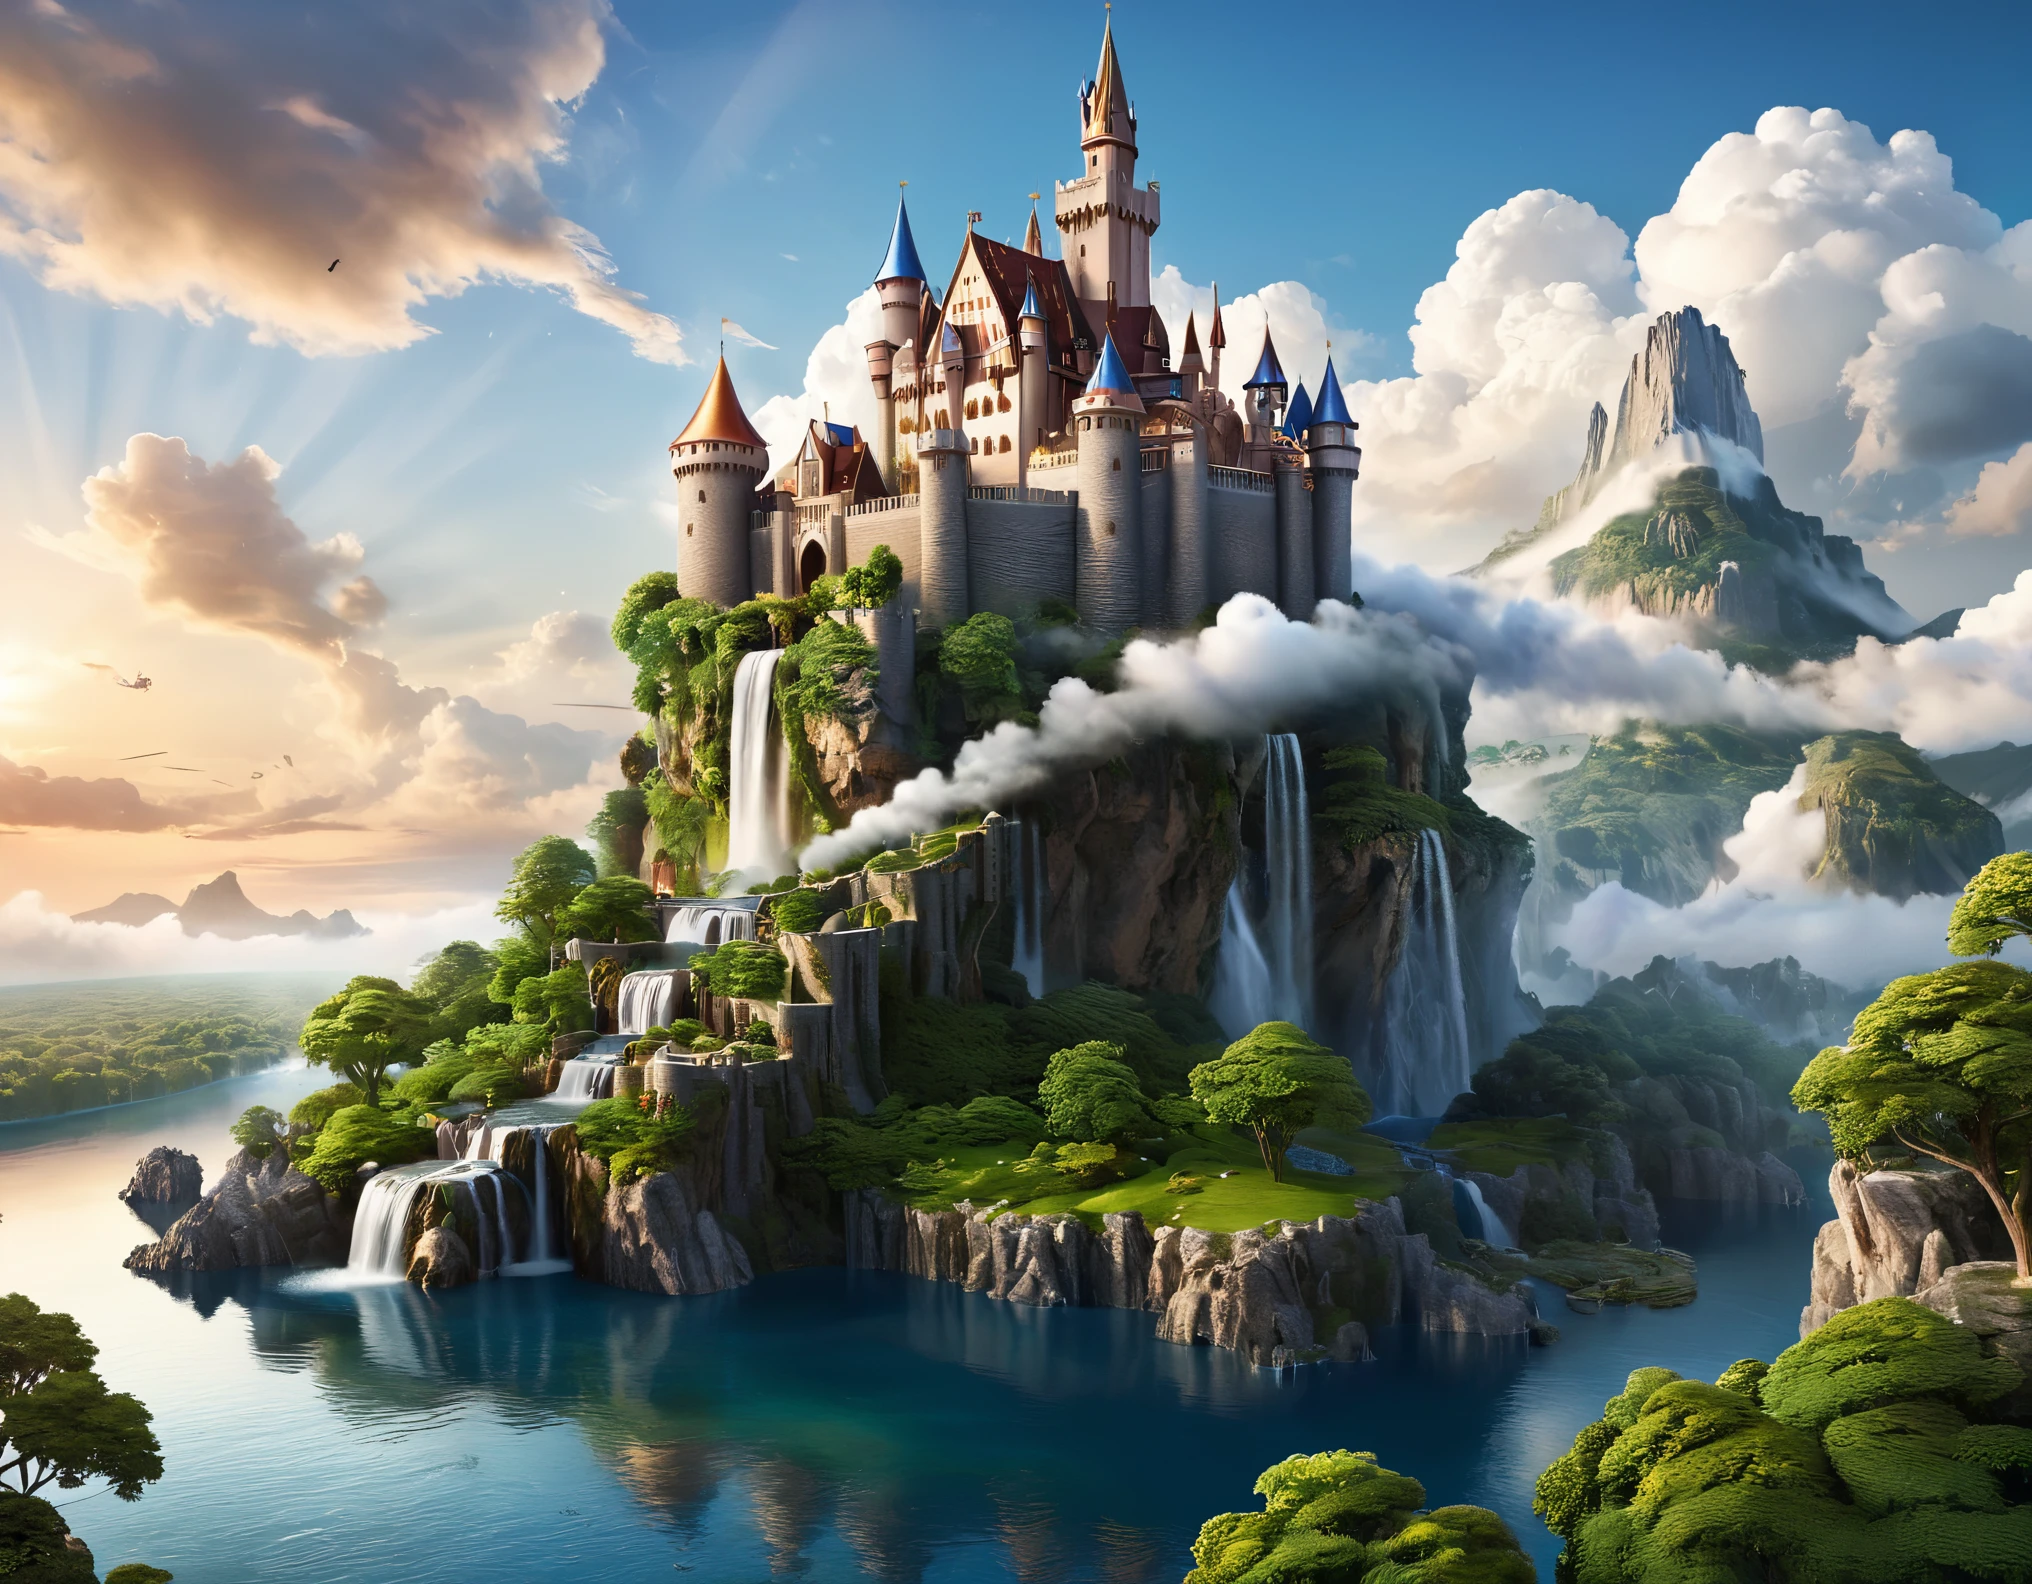 [ファンタジー城の絵文字] 雲の中に浮かぶ城を描いた幻想的な風景を想像してみてください. シーンは細部まで精巧に描かれている必要がある, 浮島や滝などの超現実的な要素を備えた. リアルなレンダリング技術を活用して、幻想的な要素がフォトリアリスティックな背景とシームレスに融合されるようにします。. 8K解像度に画像を最適化し、幻想的なファンタジーの没入感を披露します。.